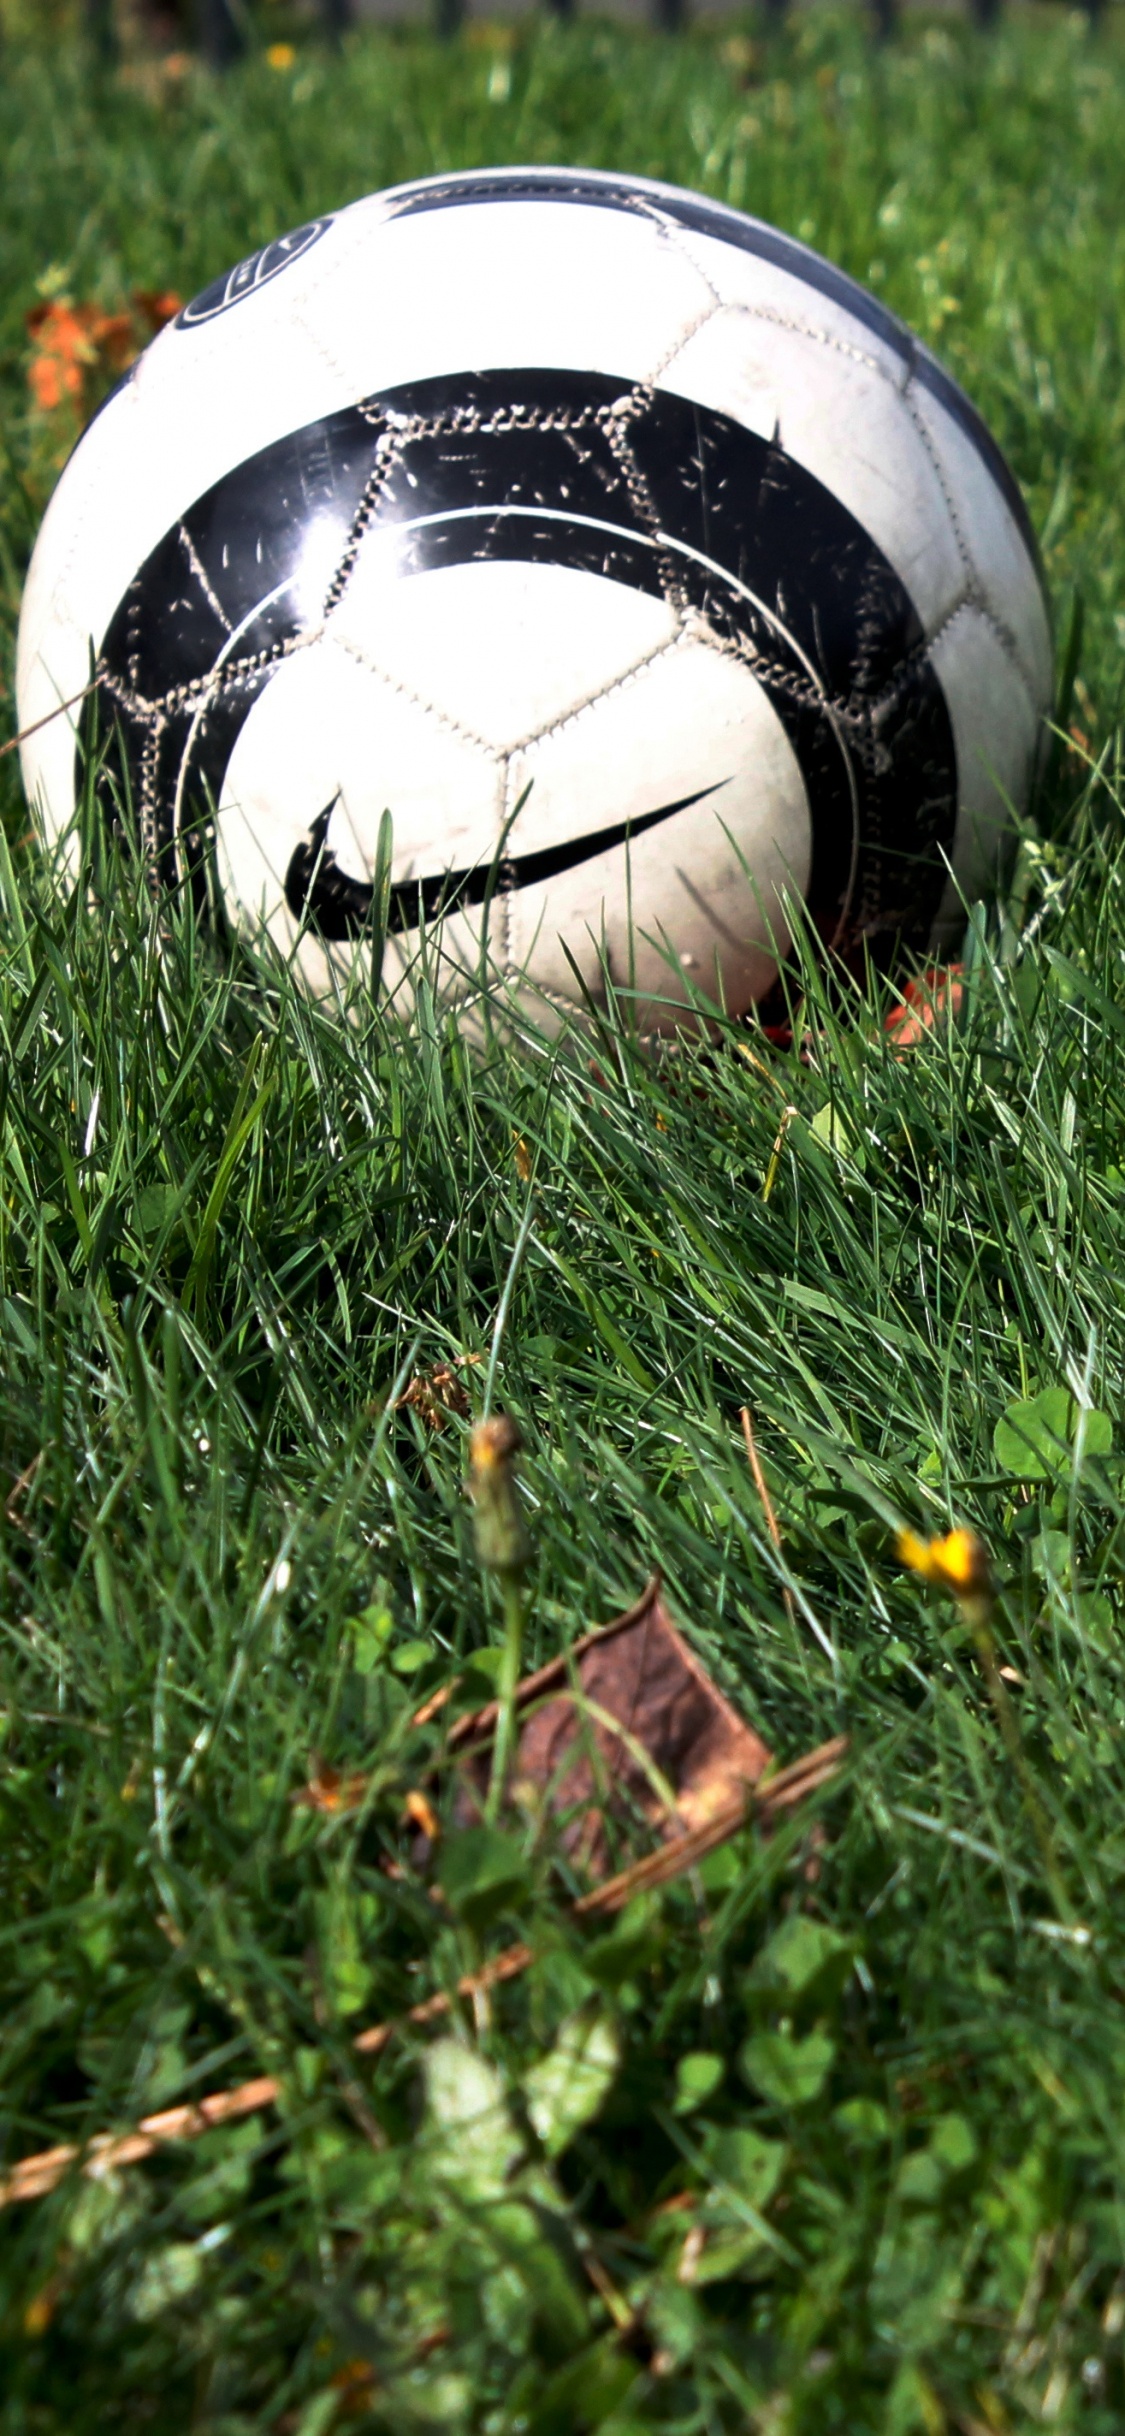 球, 体育设备, 足球, 草, 草坪 壁纸 1125x2436 允许